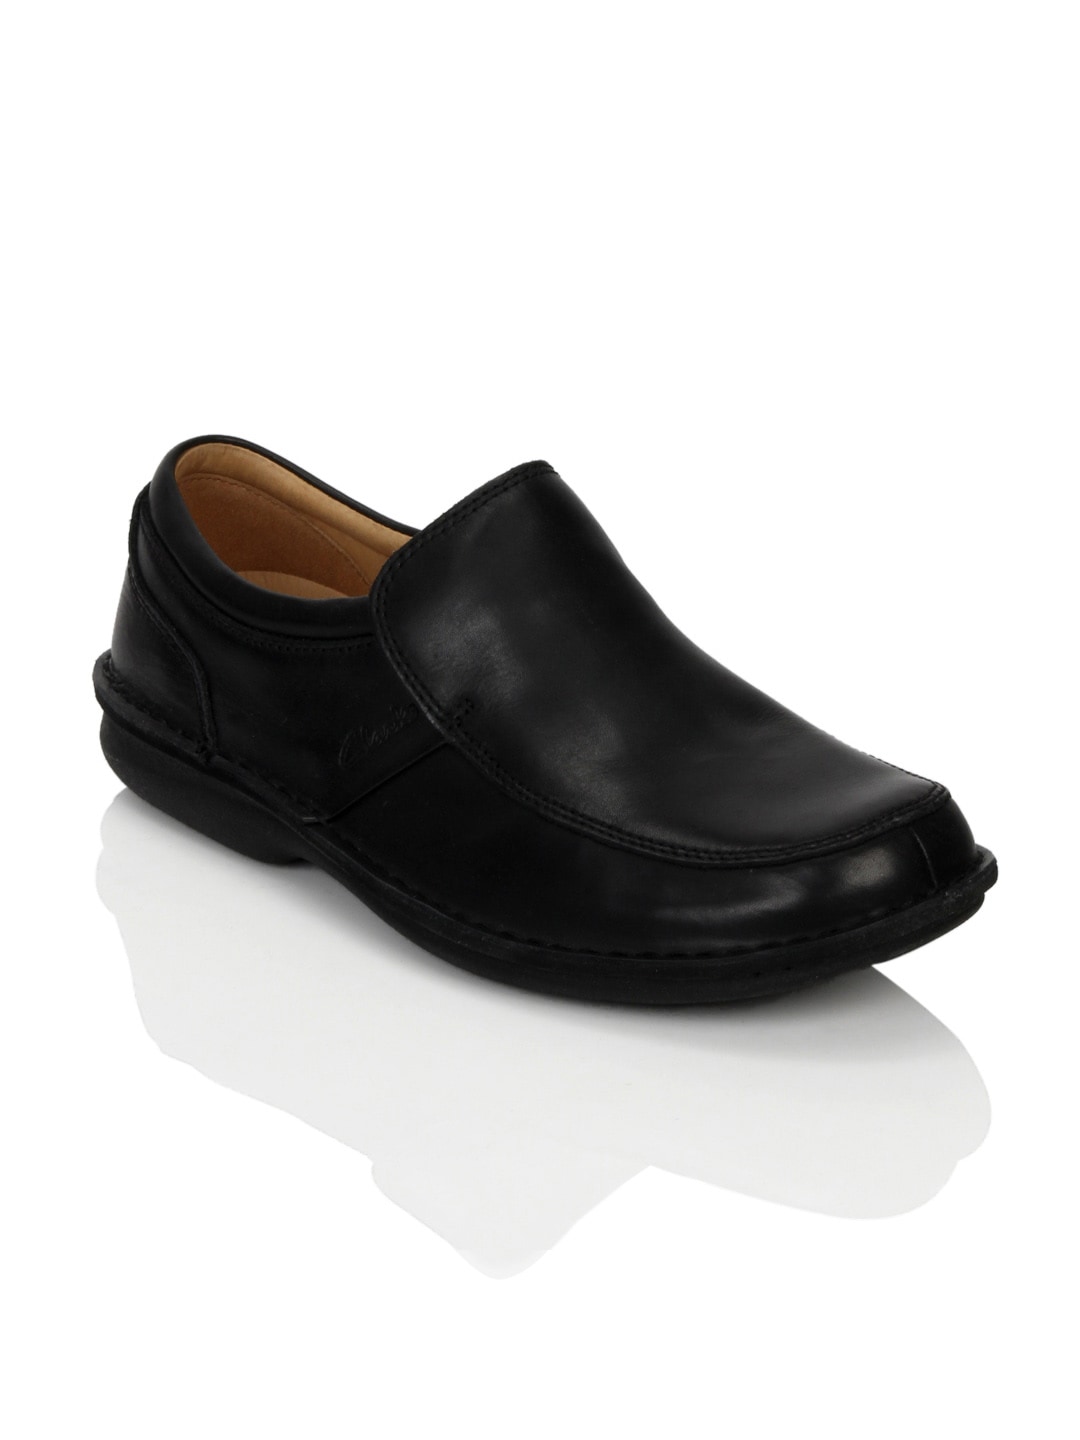 Clarks Men Black Leather Formal Shoes